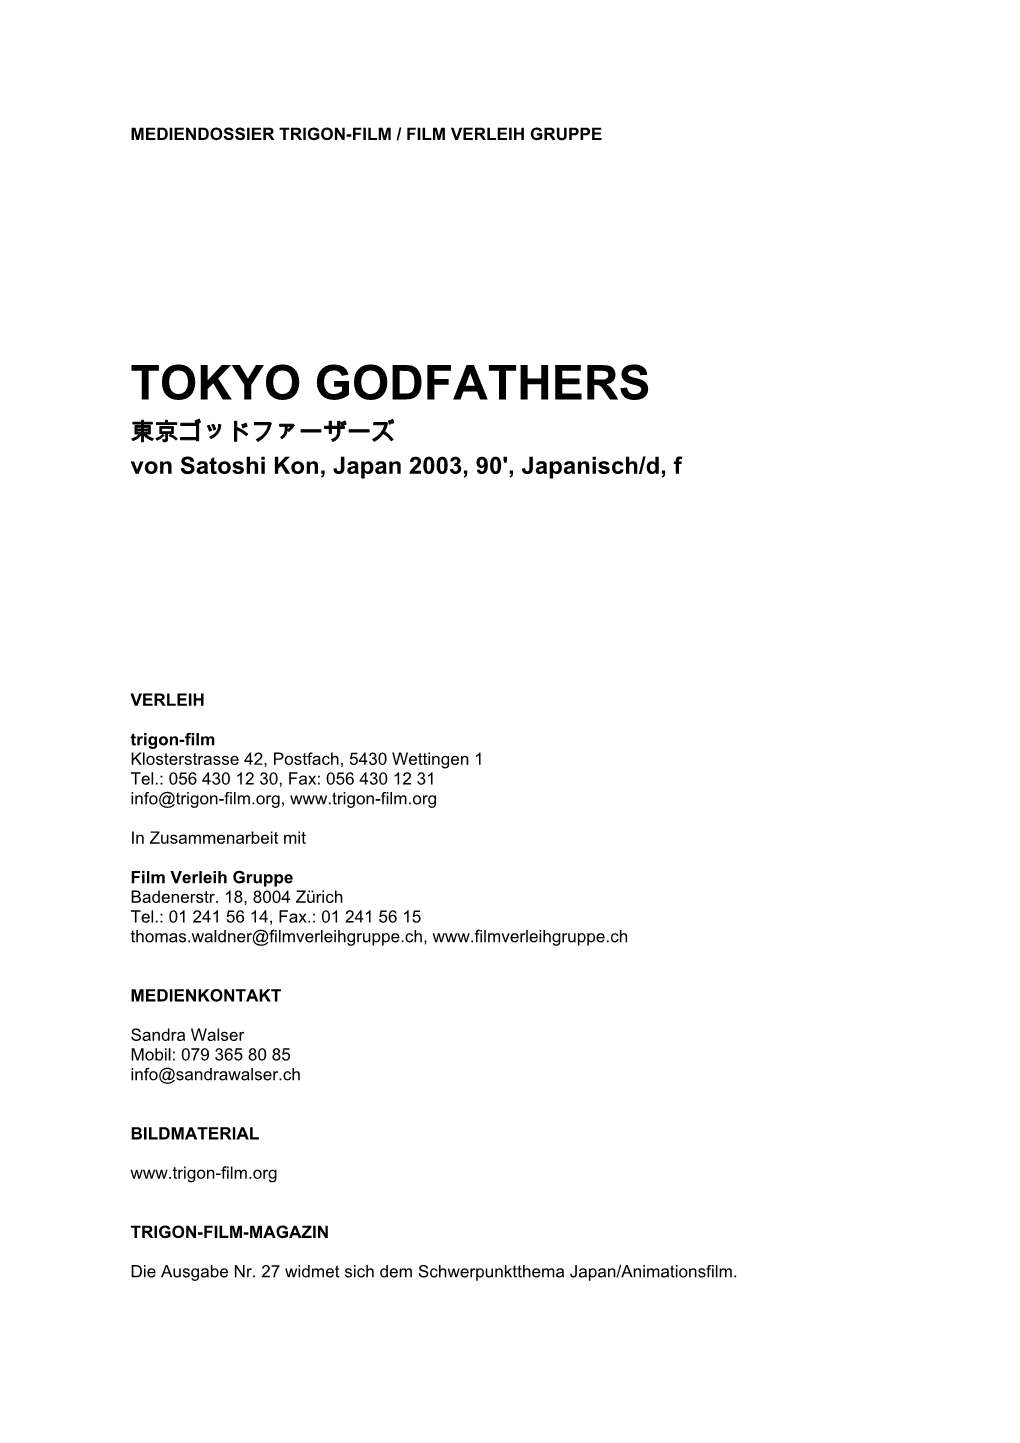 TOKYO GODFATHERS 東京ゴッドファーザーズ Von Satoshi Kon, Japan 2003, 90', Japanisch/D, F